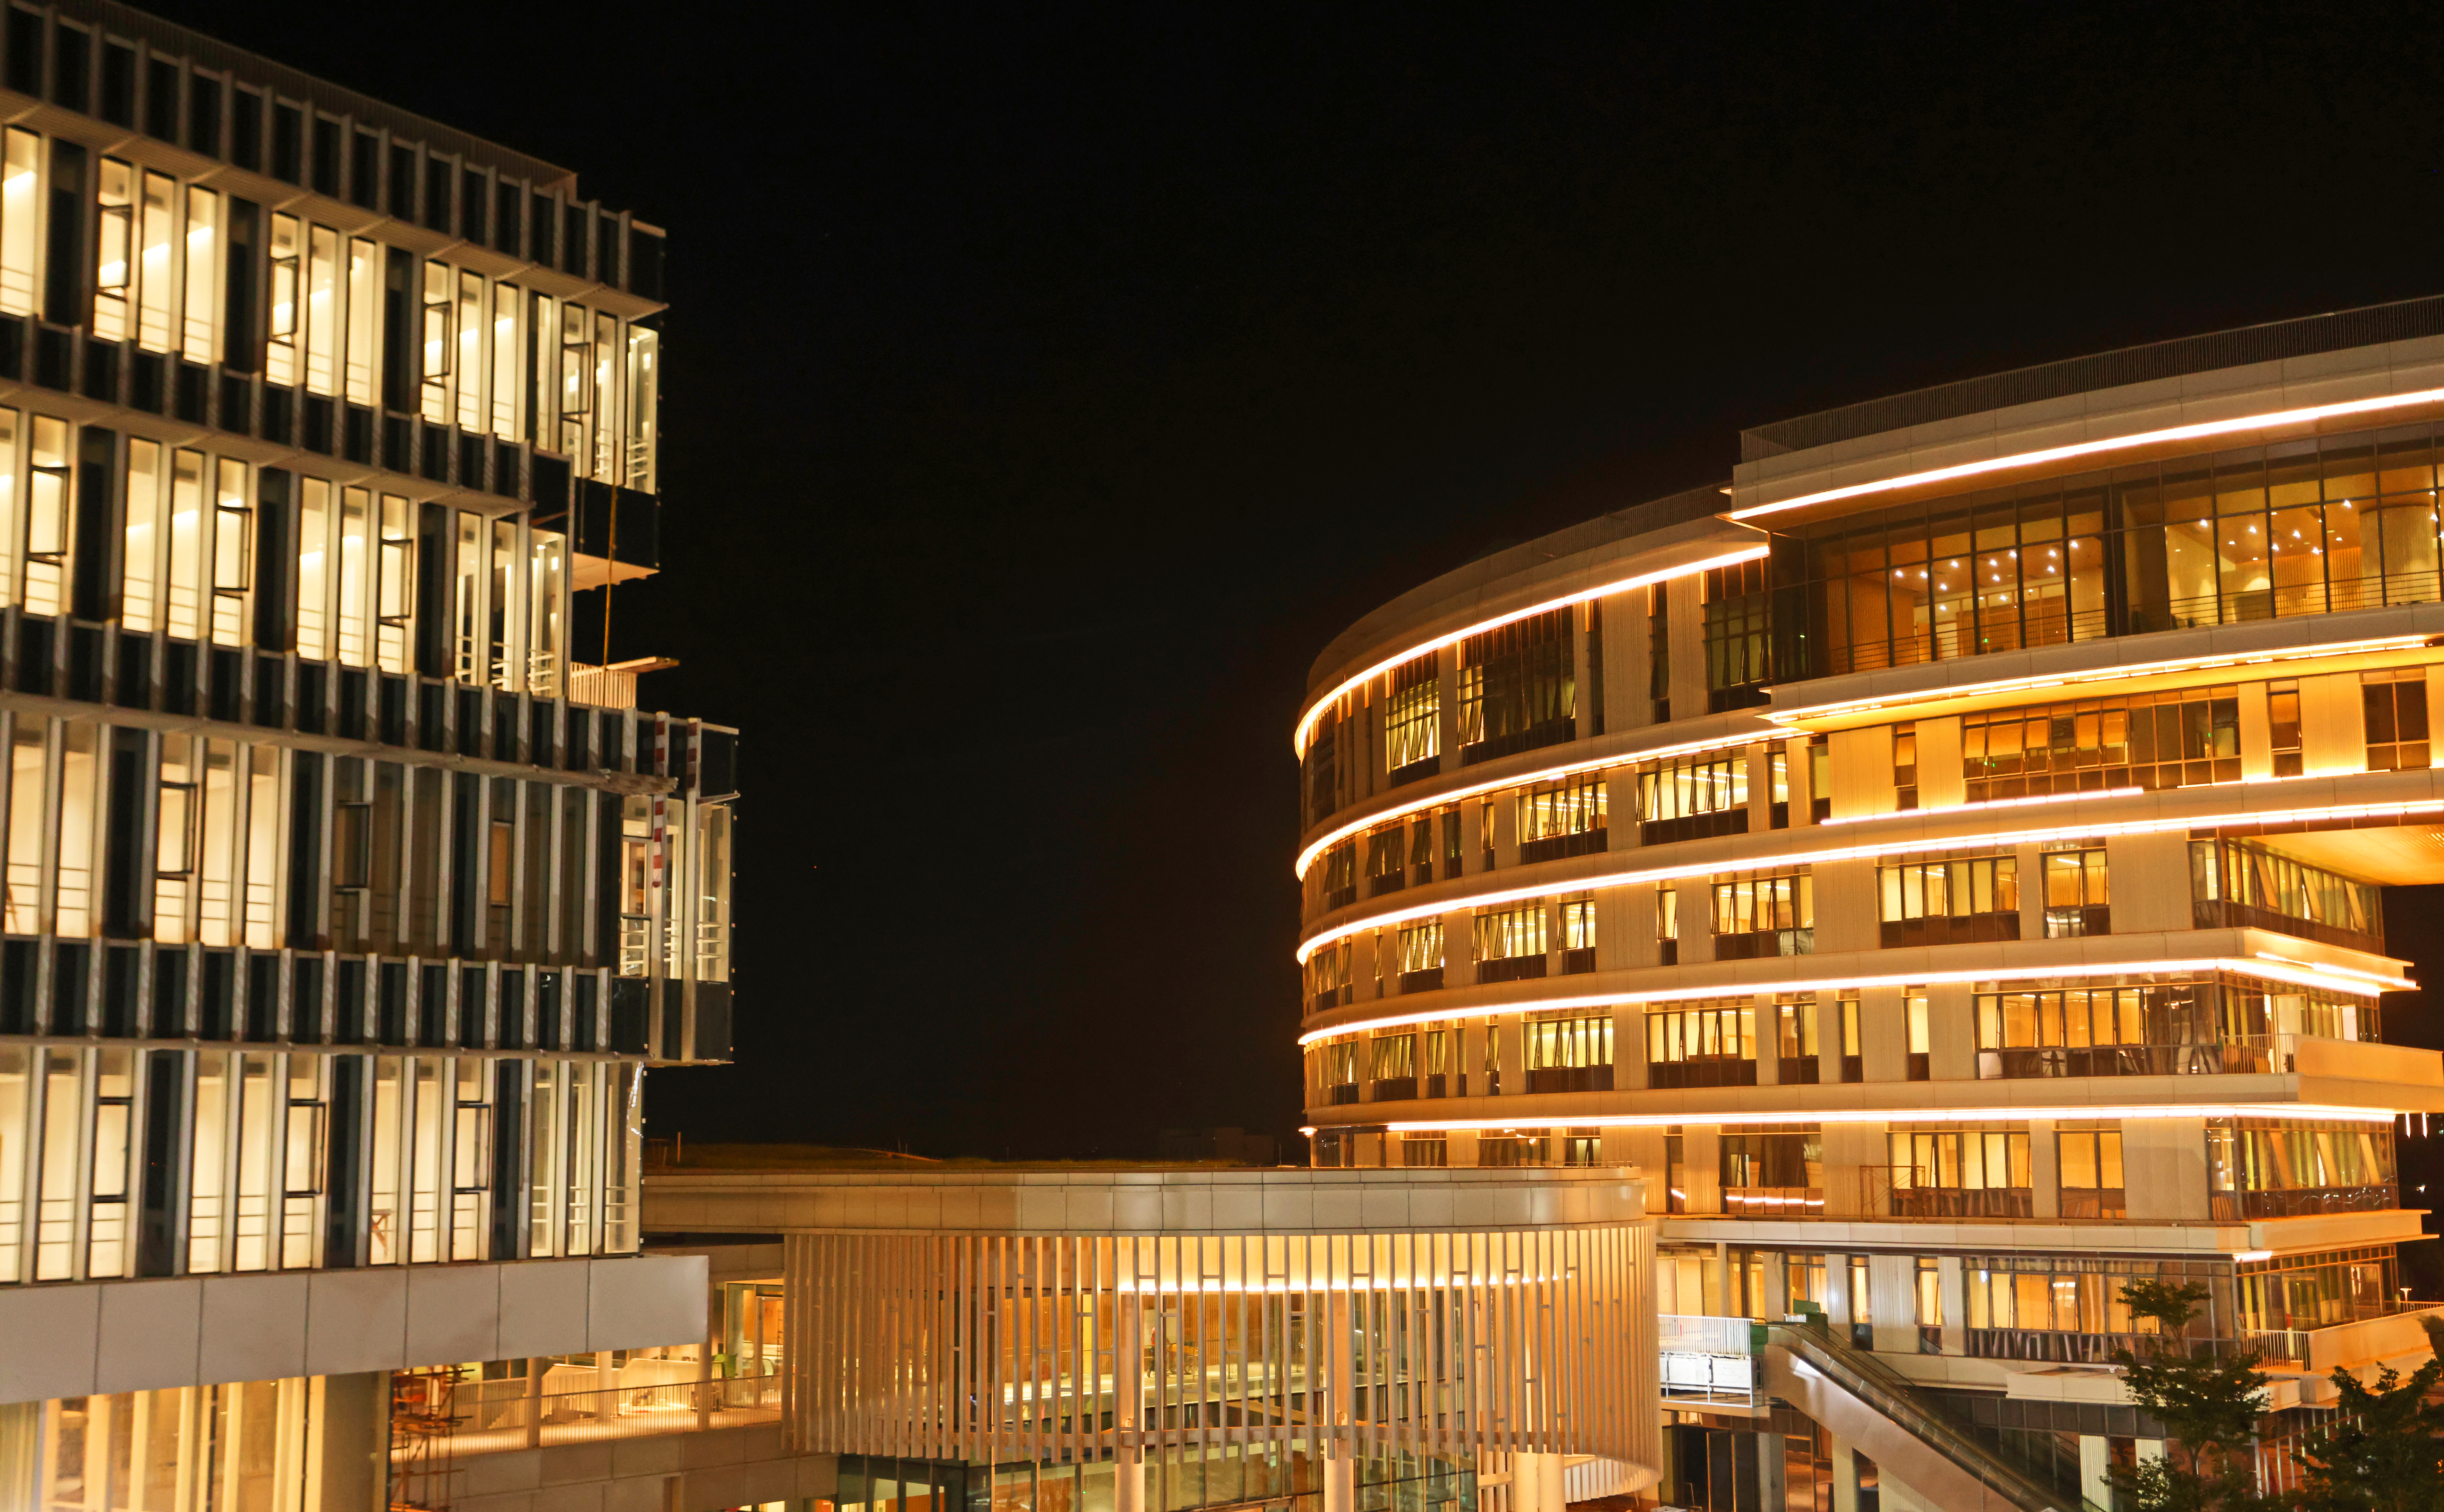 港科大（廣州）核心區樓群夜景。圖中建築為學生活動中心及行政樓。